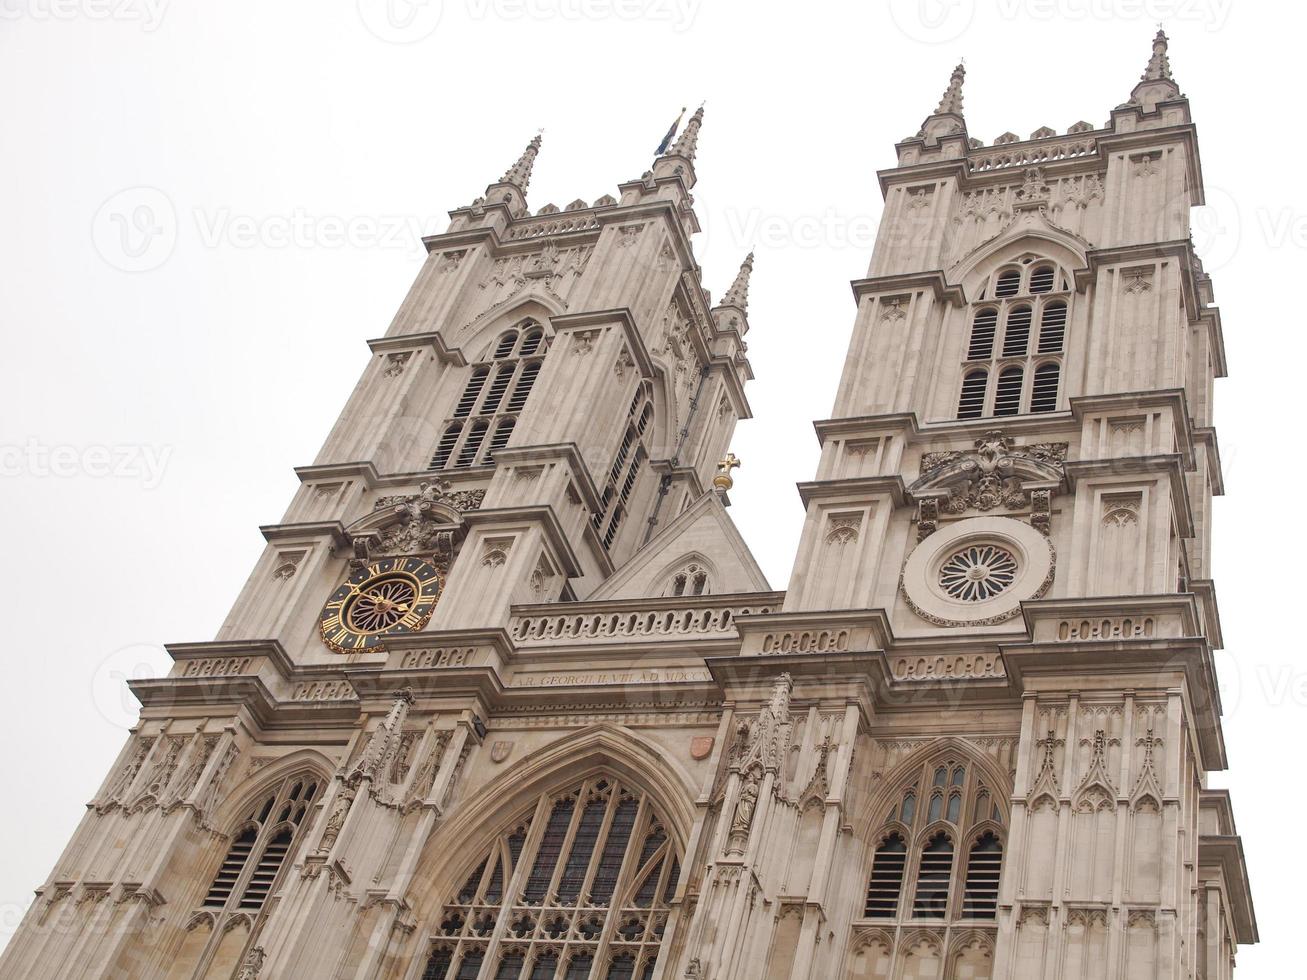 Église de l'abbaye de Westminster à Londres photo